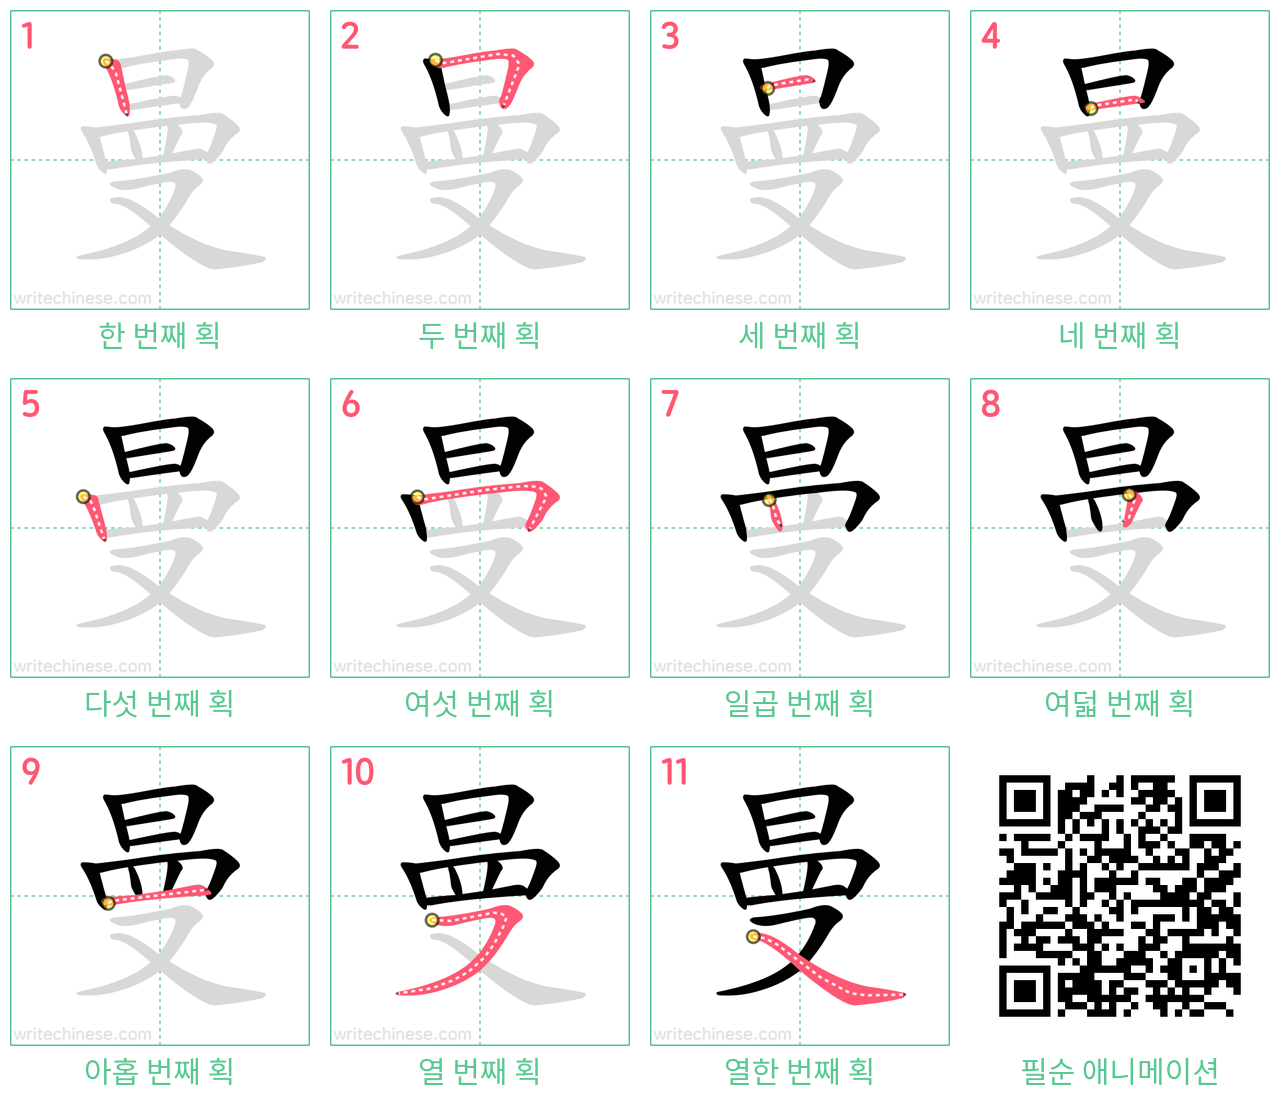 曼 step-by-step stroke order diagrams